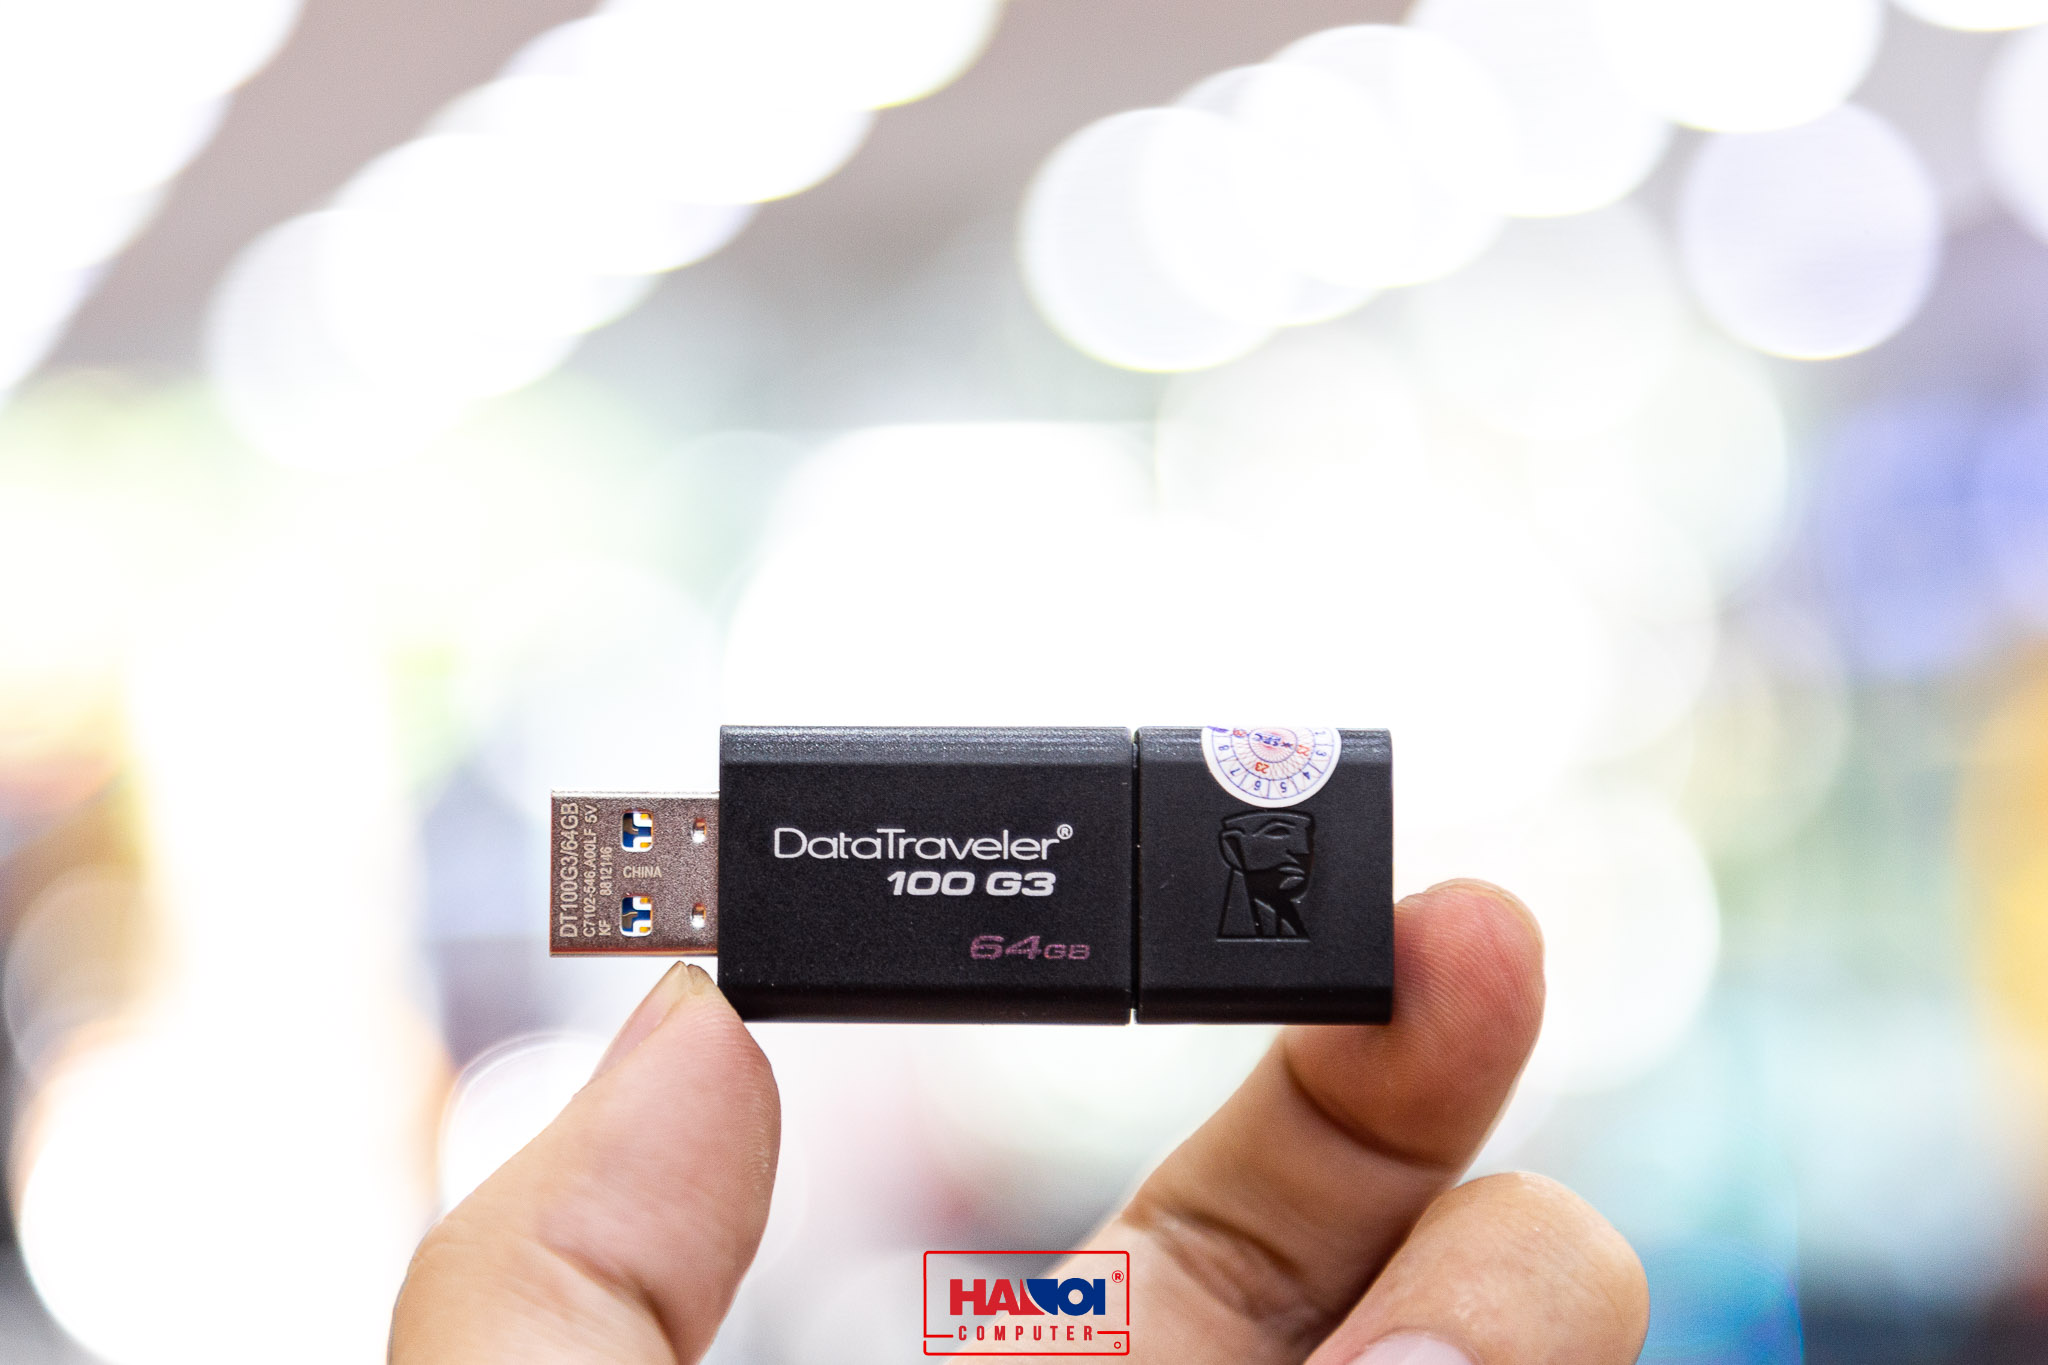 USB Kingston 64GB DT100G3 USB 3.0